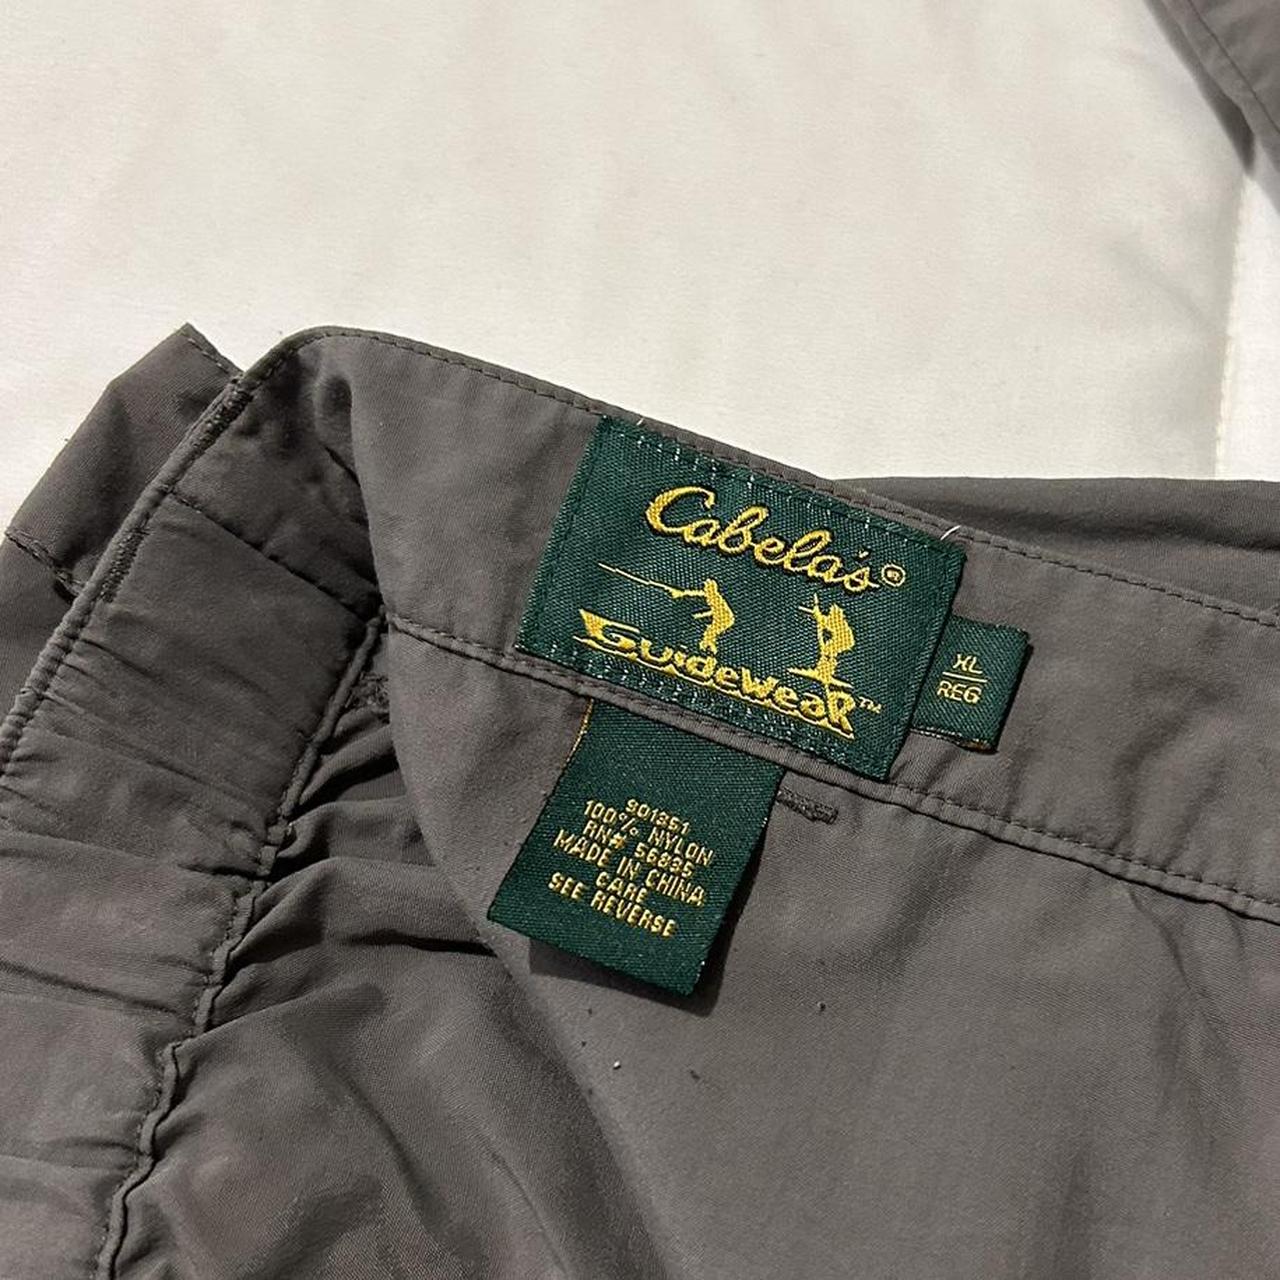 Cabela's Guidewear Zip-Off Pants for Men